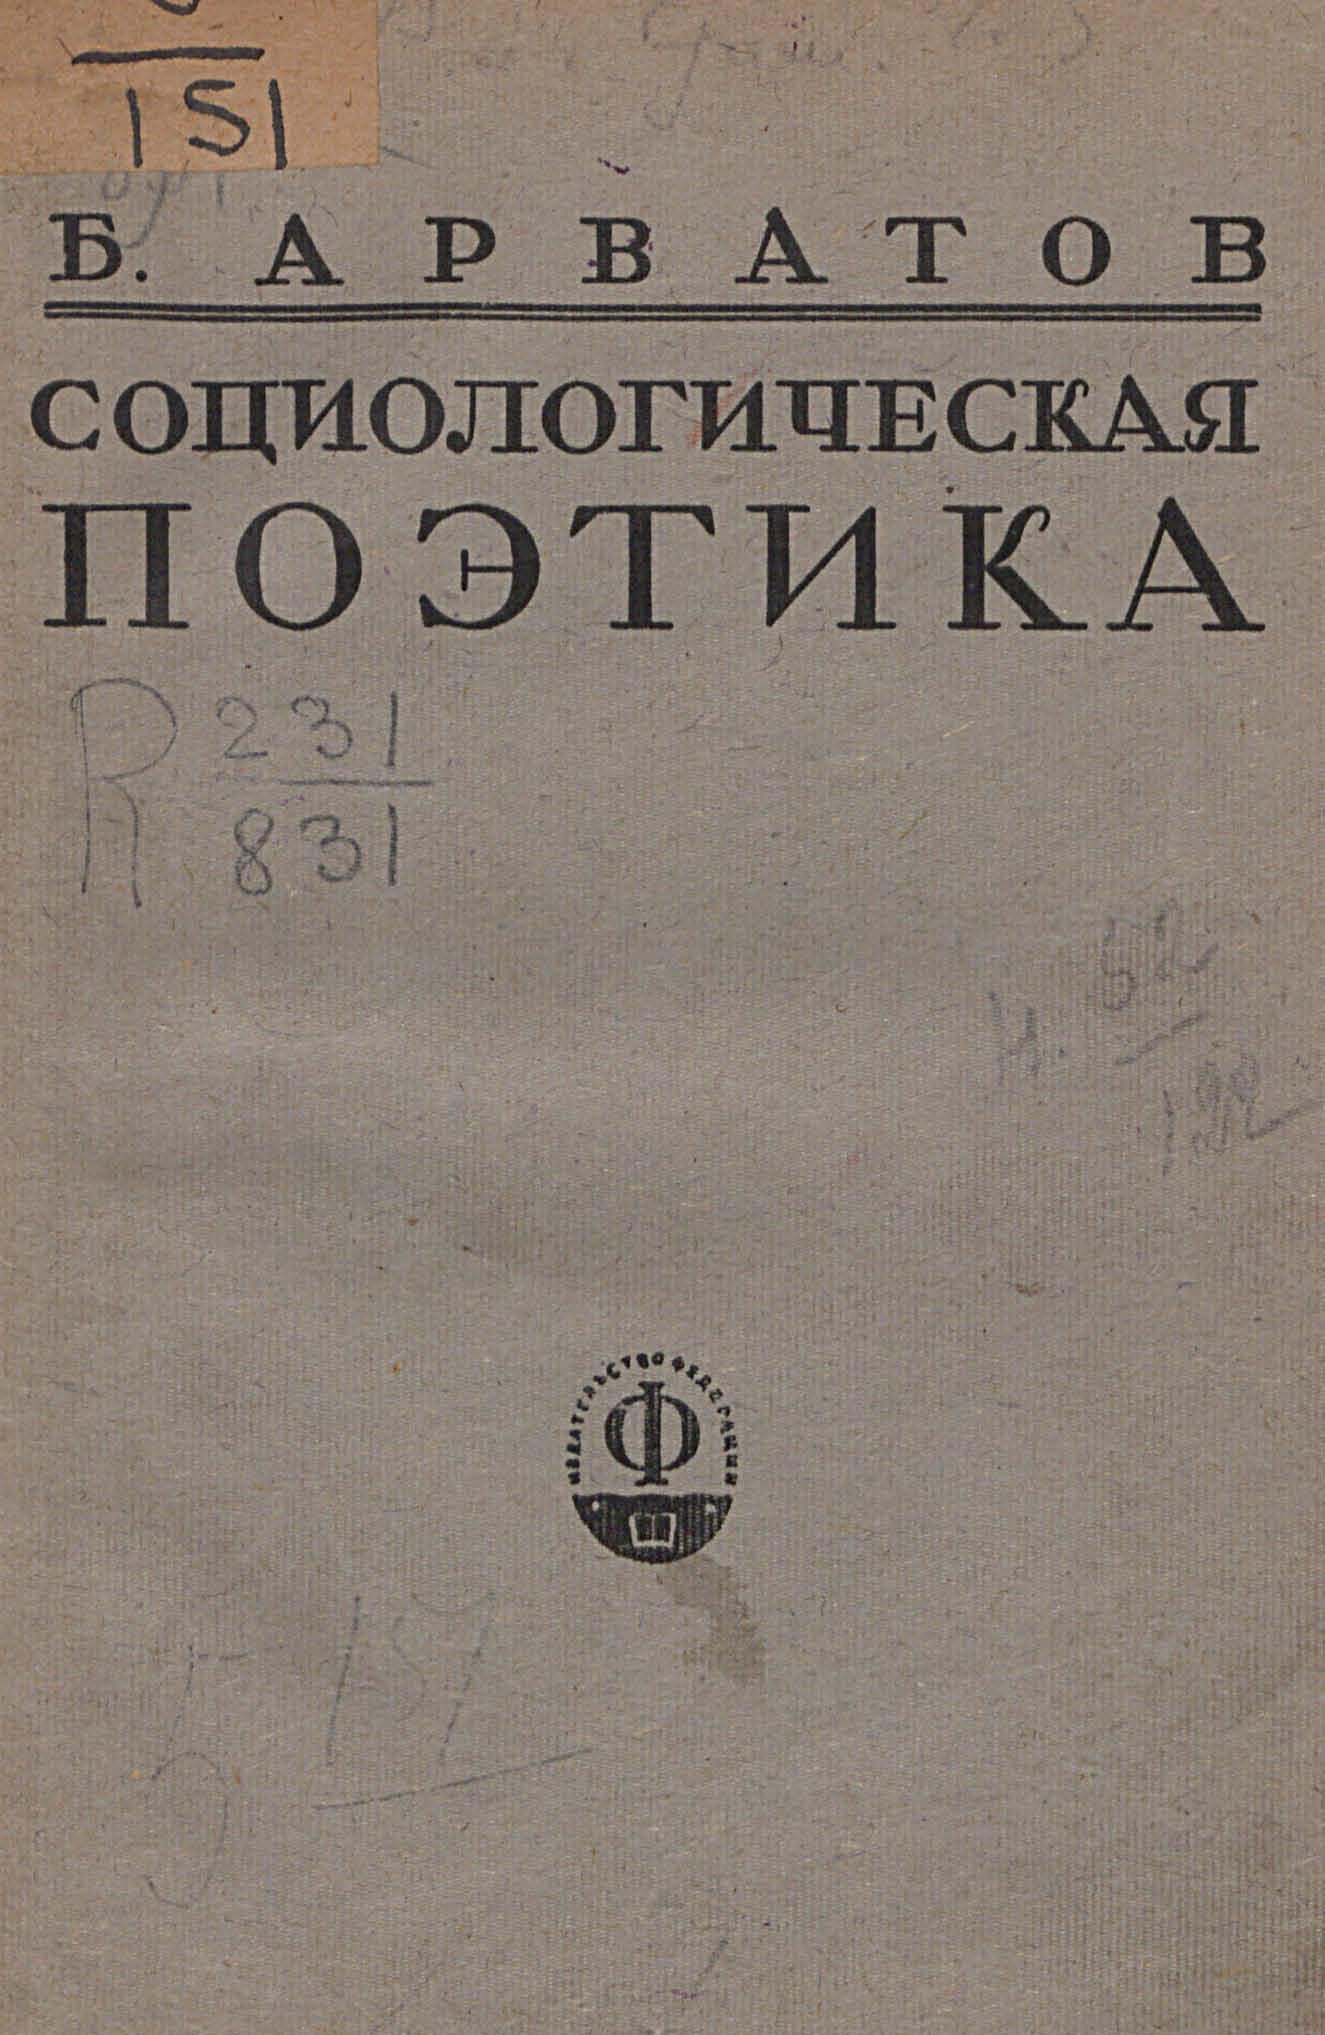 Социологическая поэтика / Б. Арватов. — Москва : Издательство «Федерация», 1928